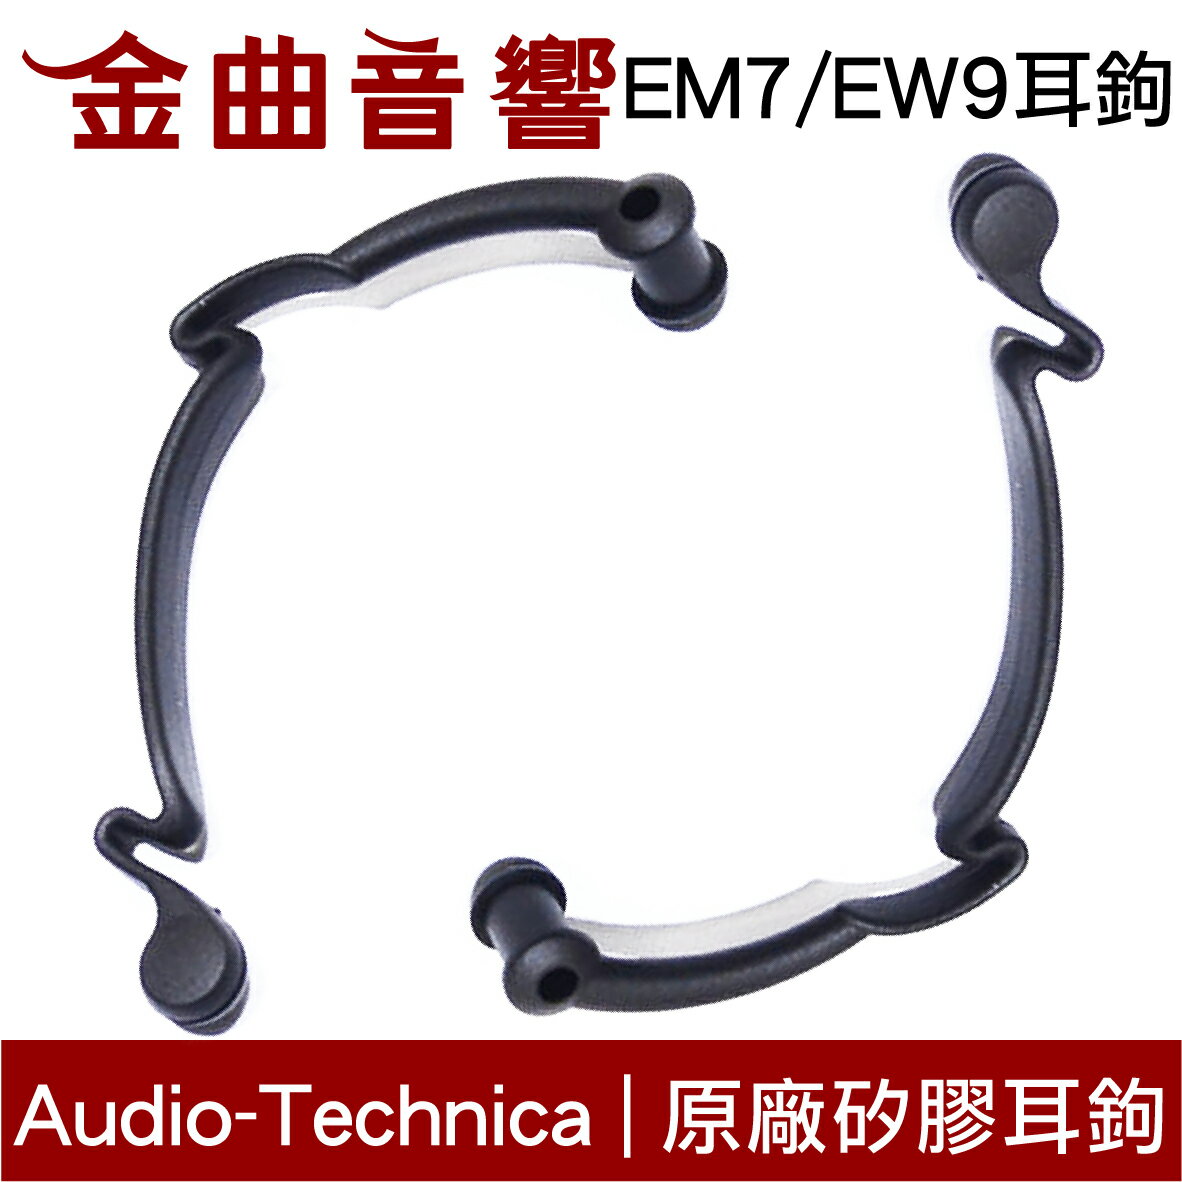 Audio-Technica 鐵三角 EM7 EW9 原廠耳鉤 一對 | 金曲音響